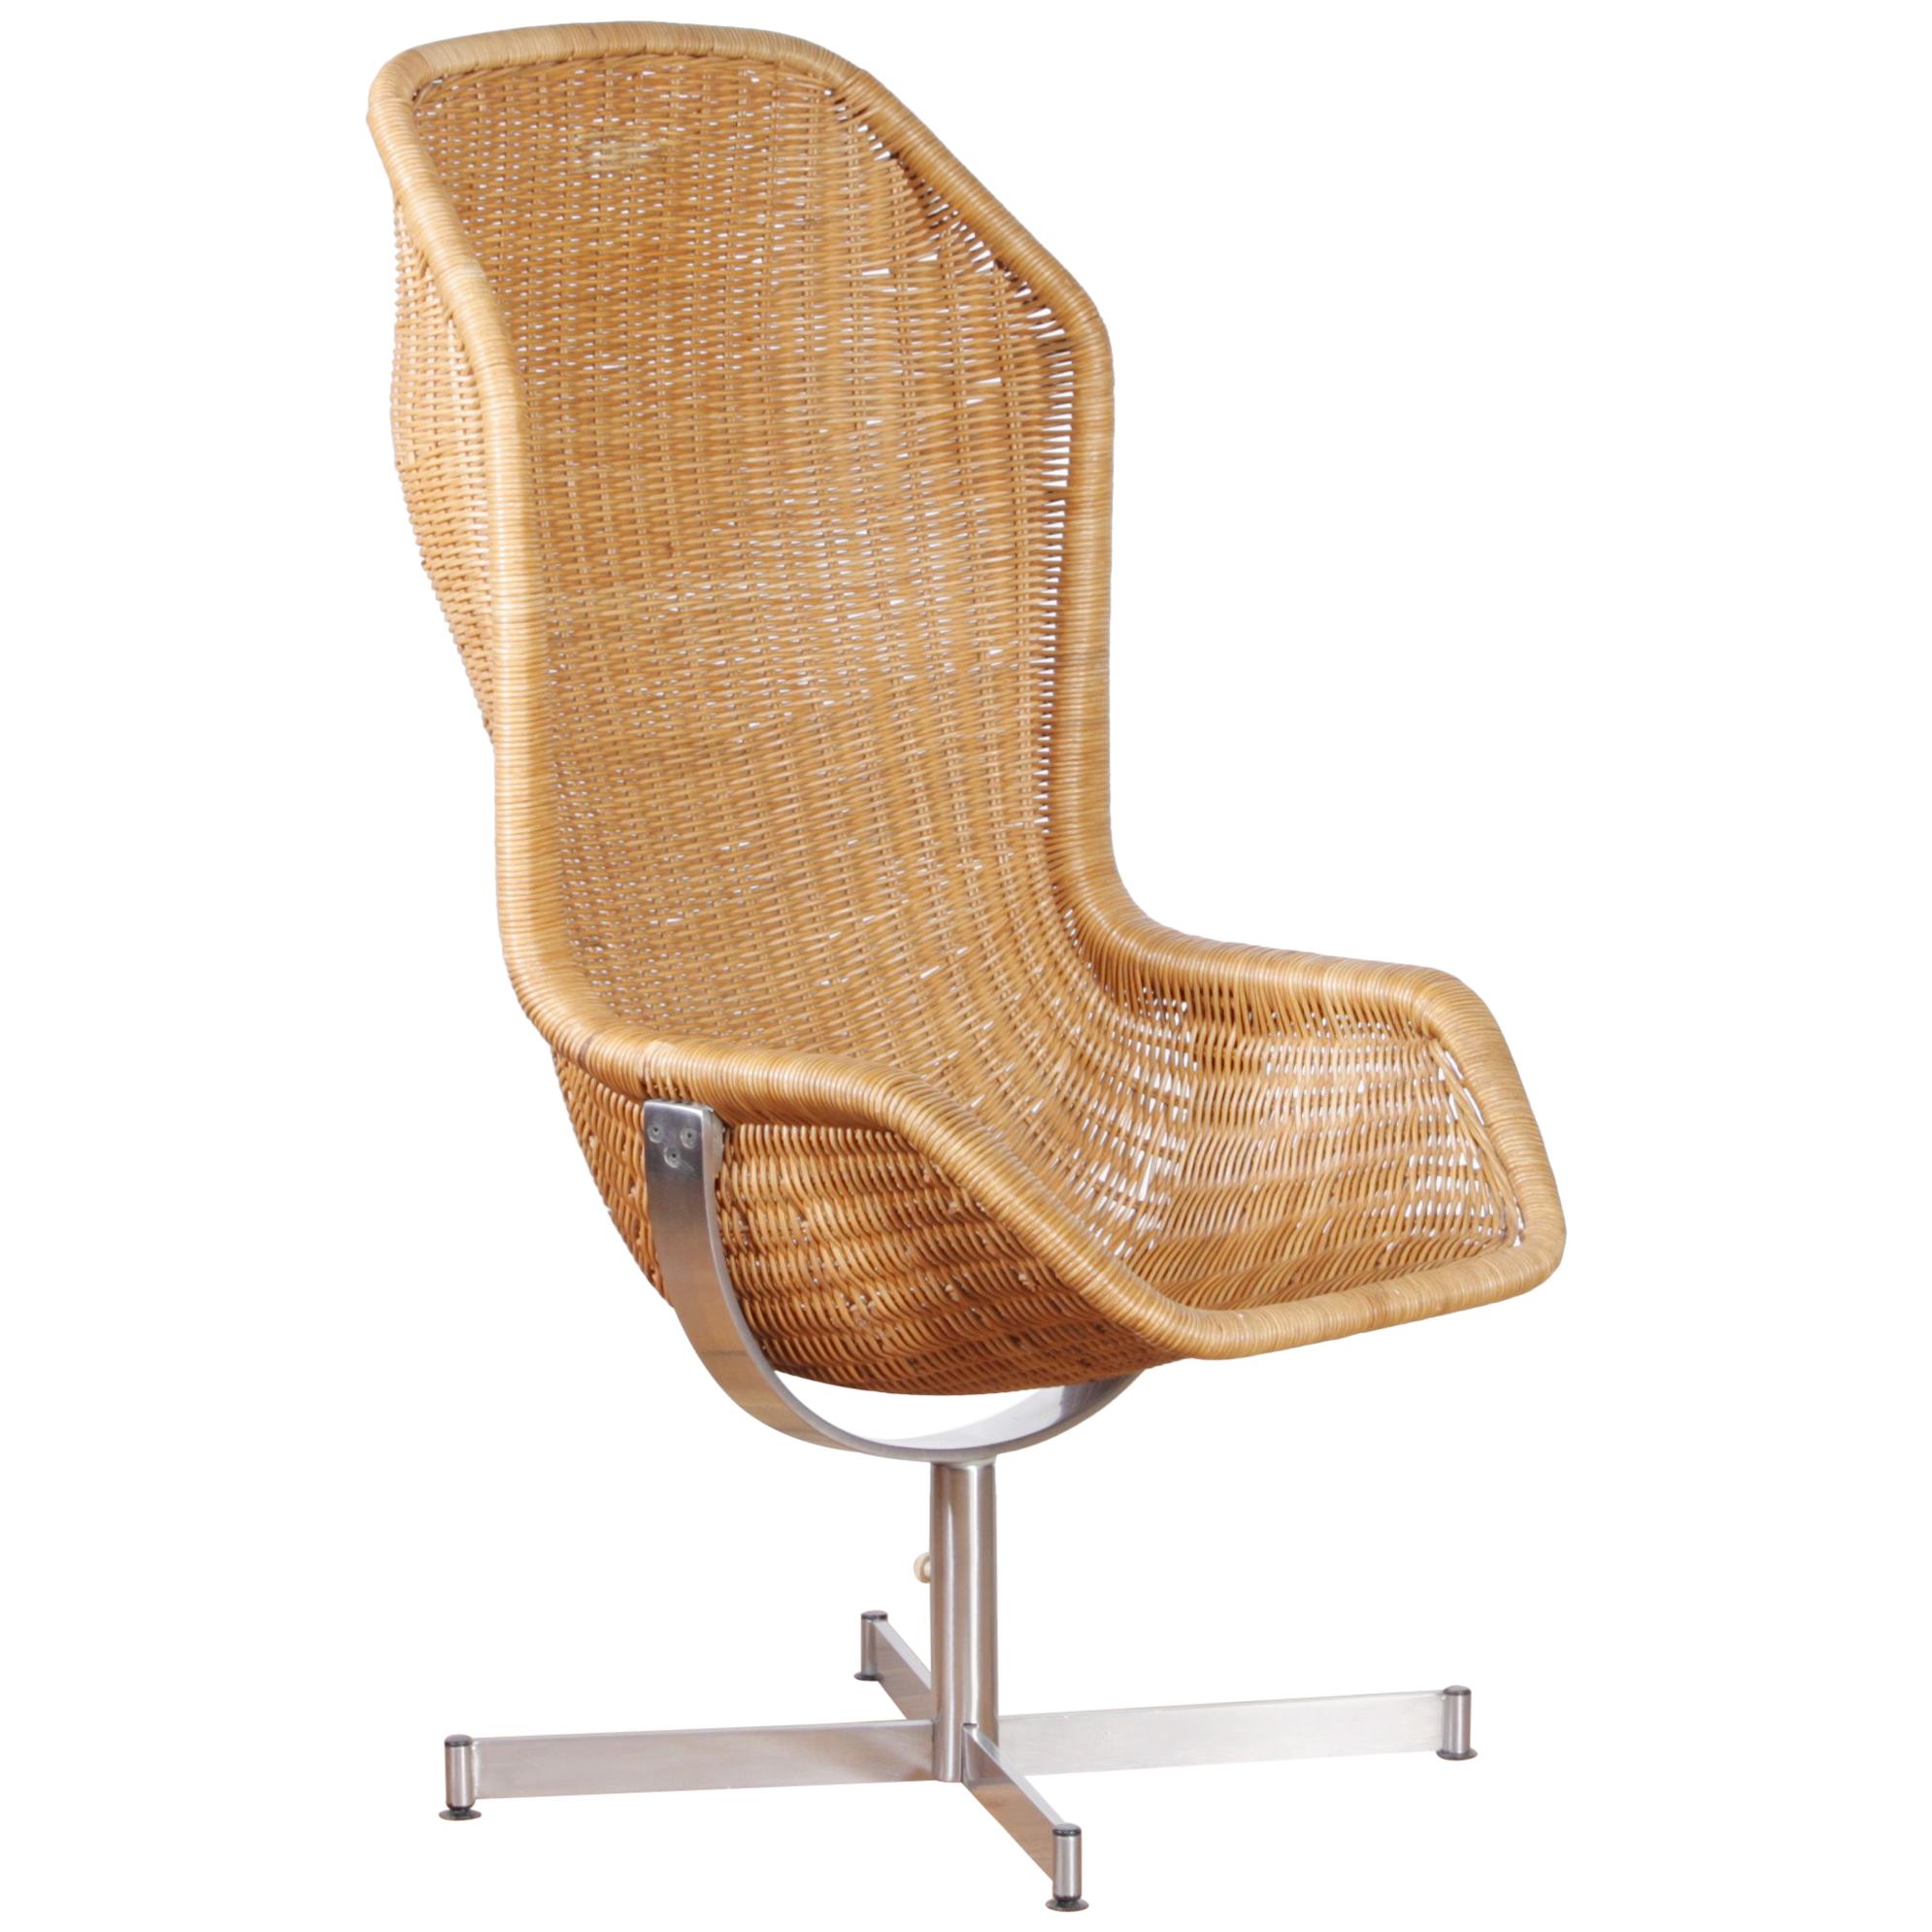 1960s, Swivel Rattan Chair by Dirk Van Sliedregt for Gebroeders Jonkers